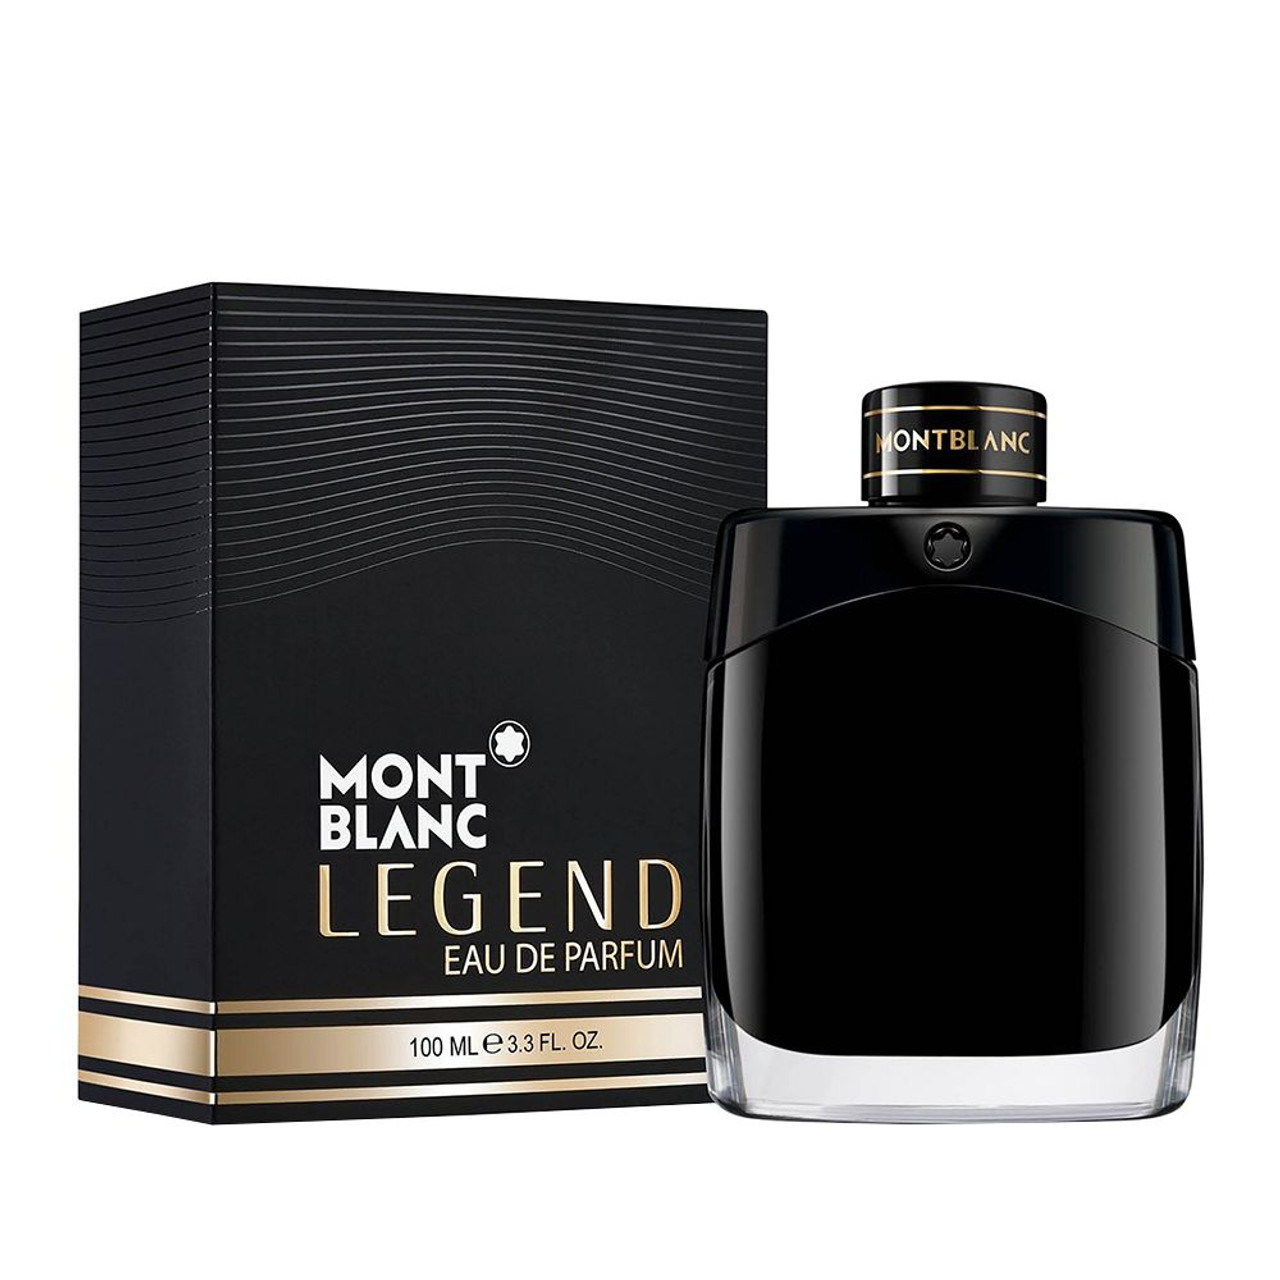 MONT BLANC - Legend Eau de - Bridge Beauty oz. Parfum 3.3